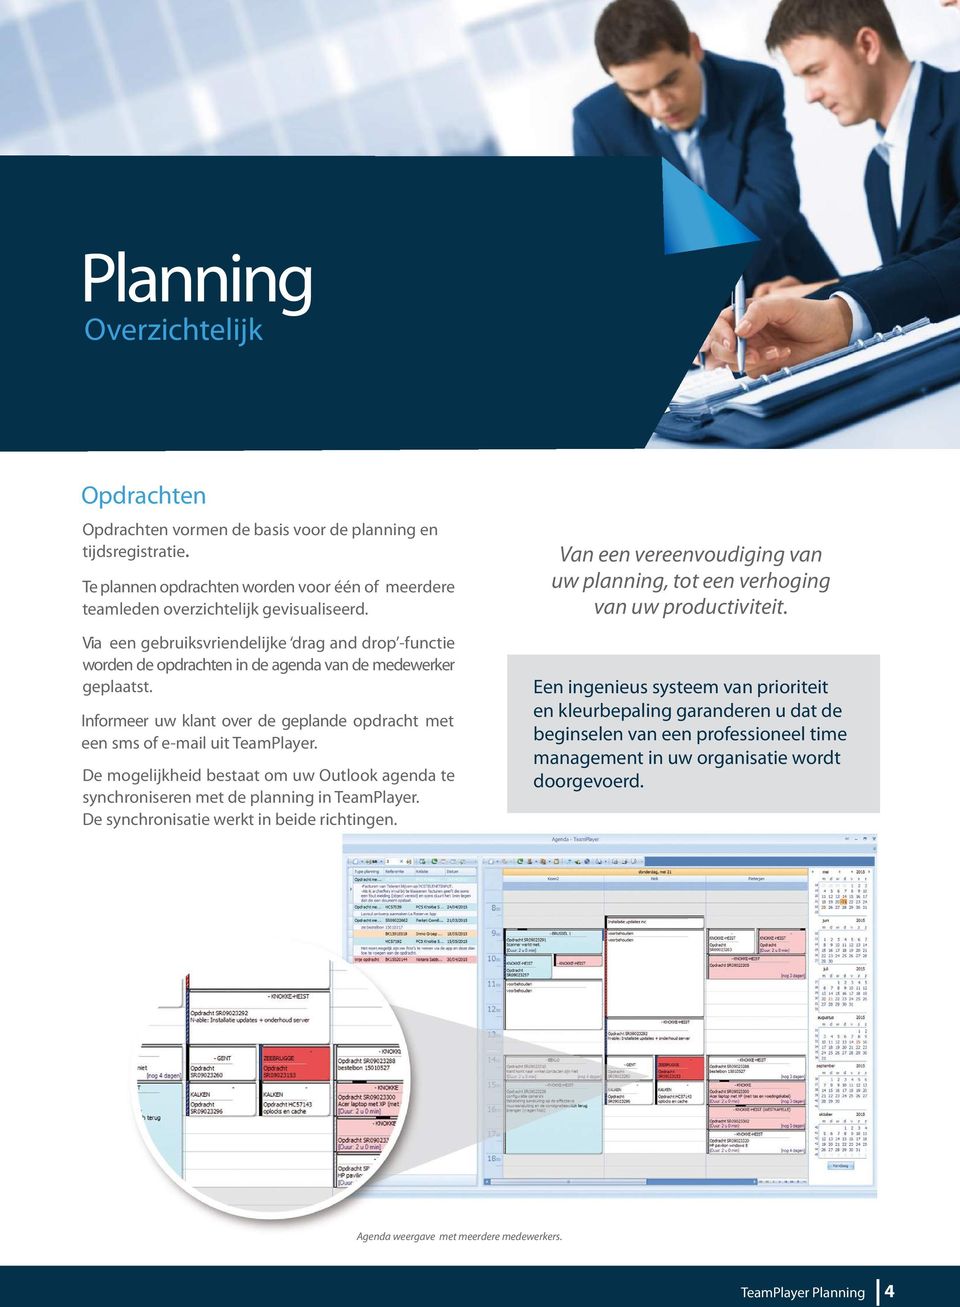 De mogelijkheid bestaat om uw Outlook agenda te synchroniseren met de planning in TeamPlayer. De synchronisatie werkt in beide richtingen.